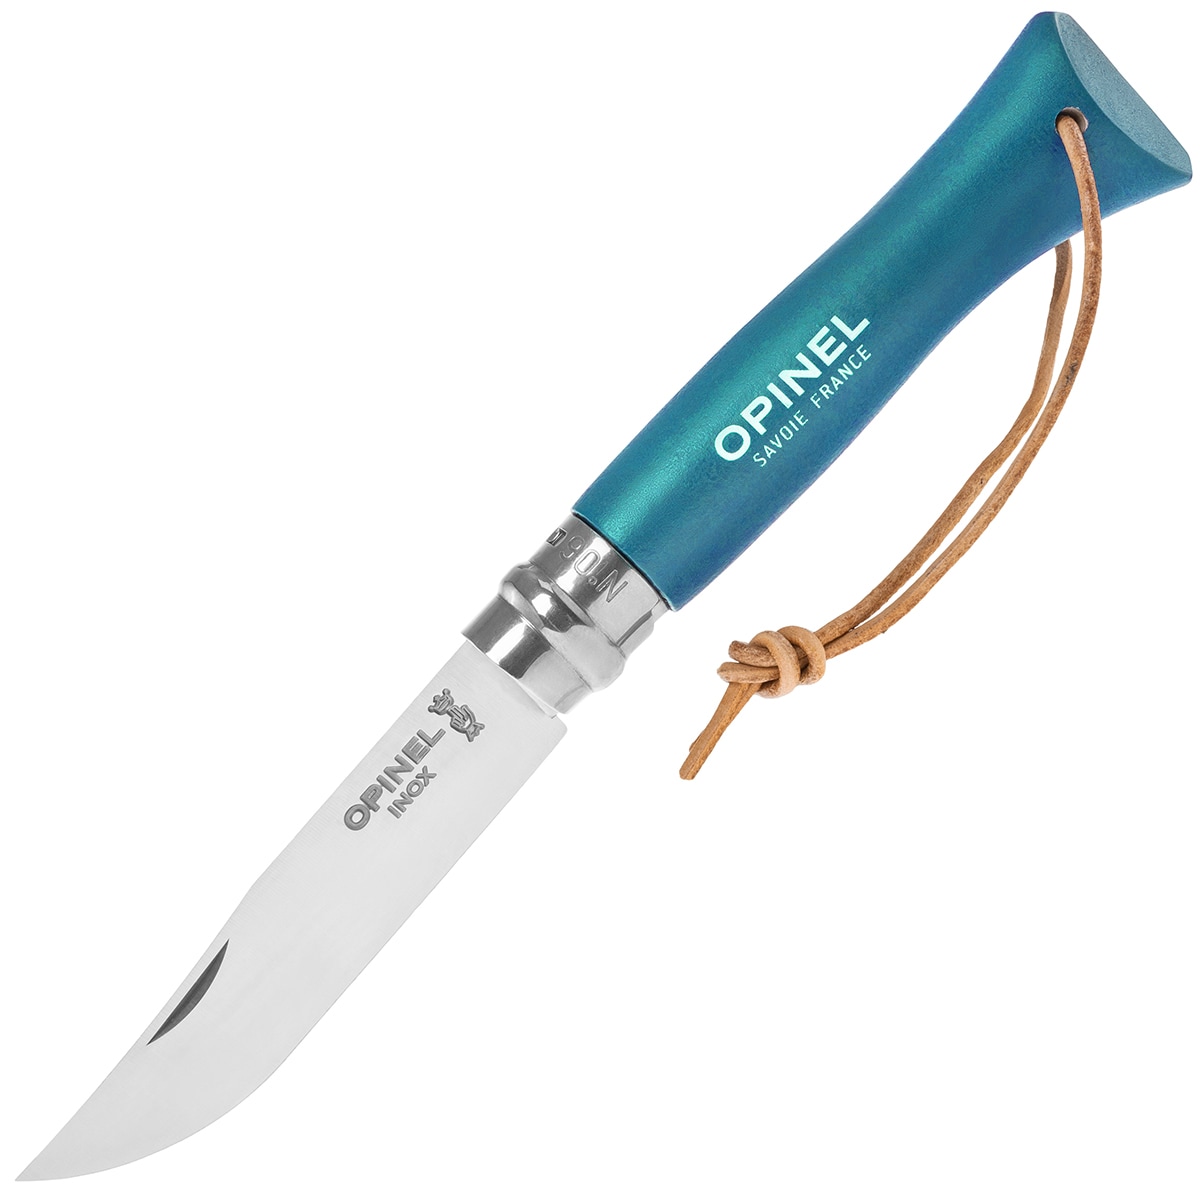 Nóż składany Opinel No.6 Colorama Inox - Turquoise